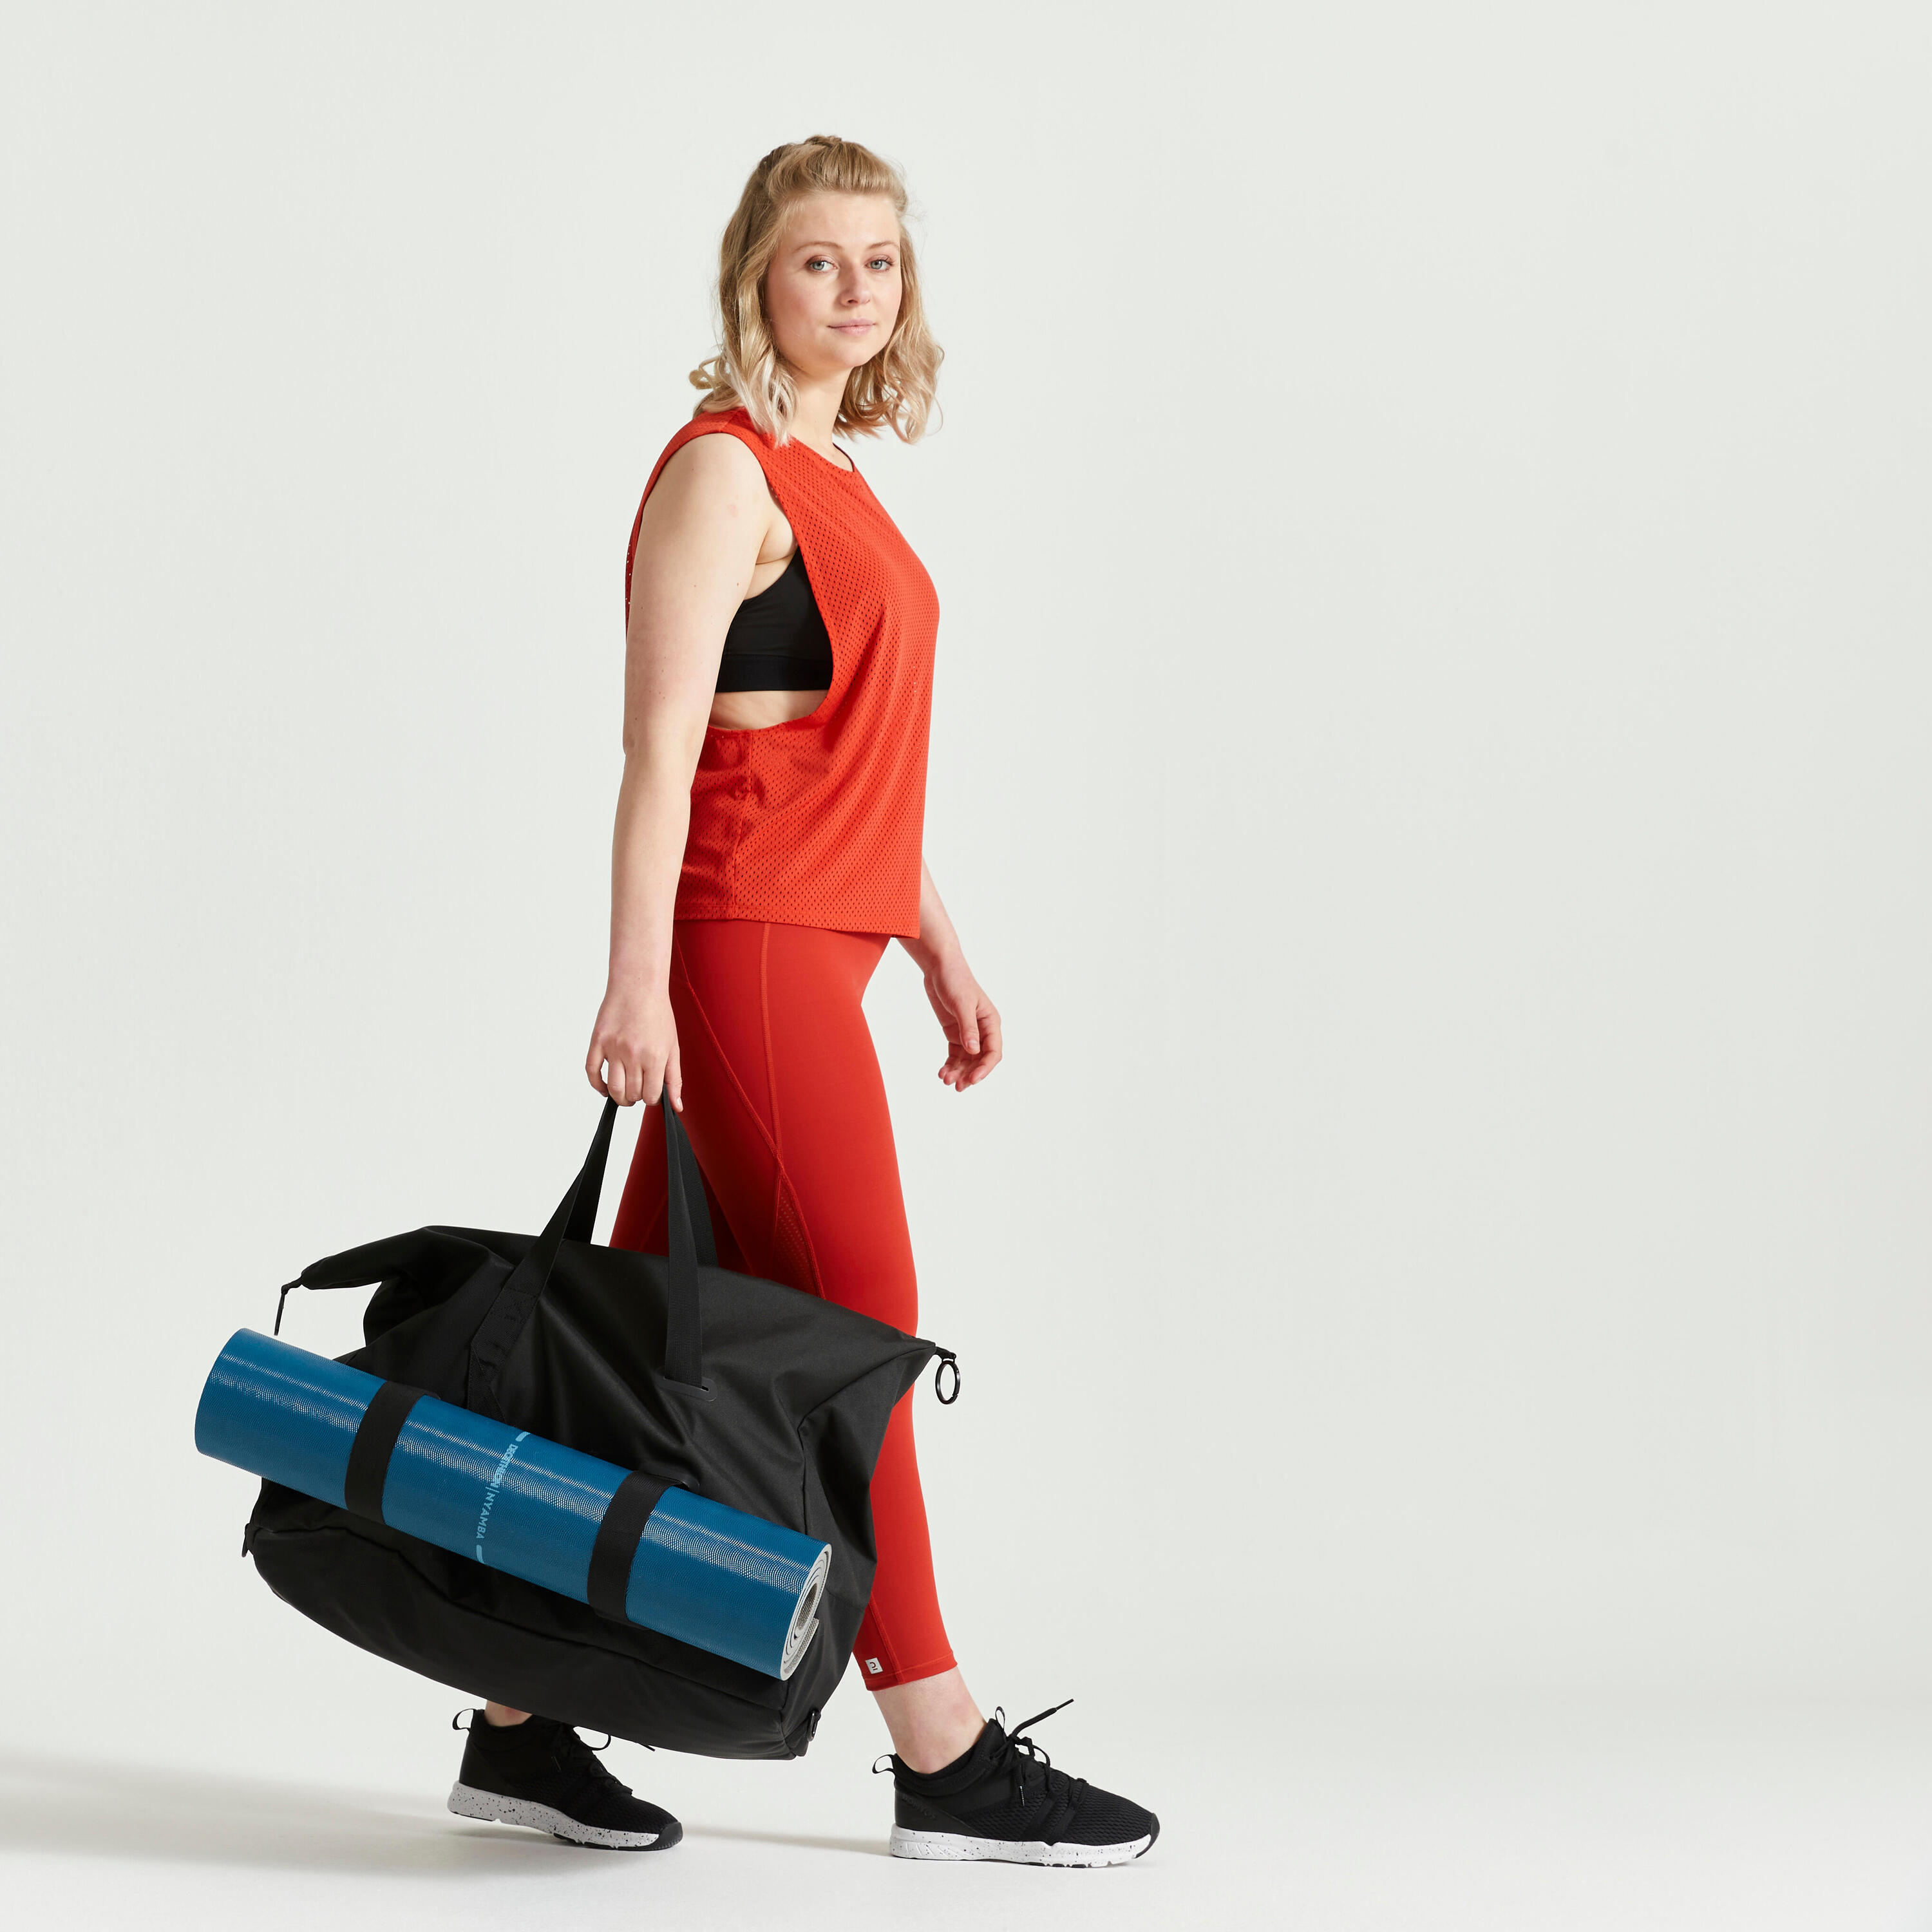 An Elegant Training Bag Designed For Both Men And Women 6/9